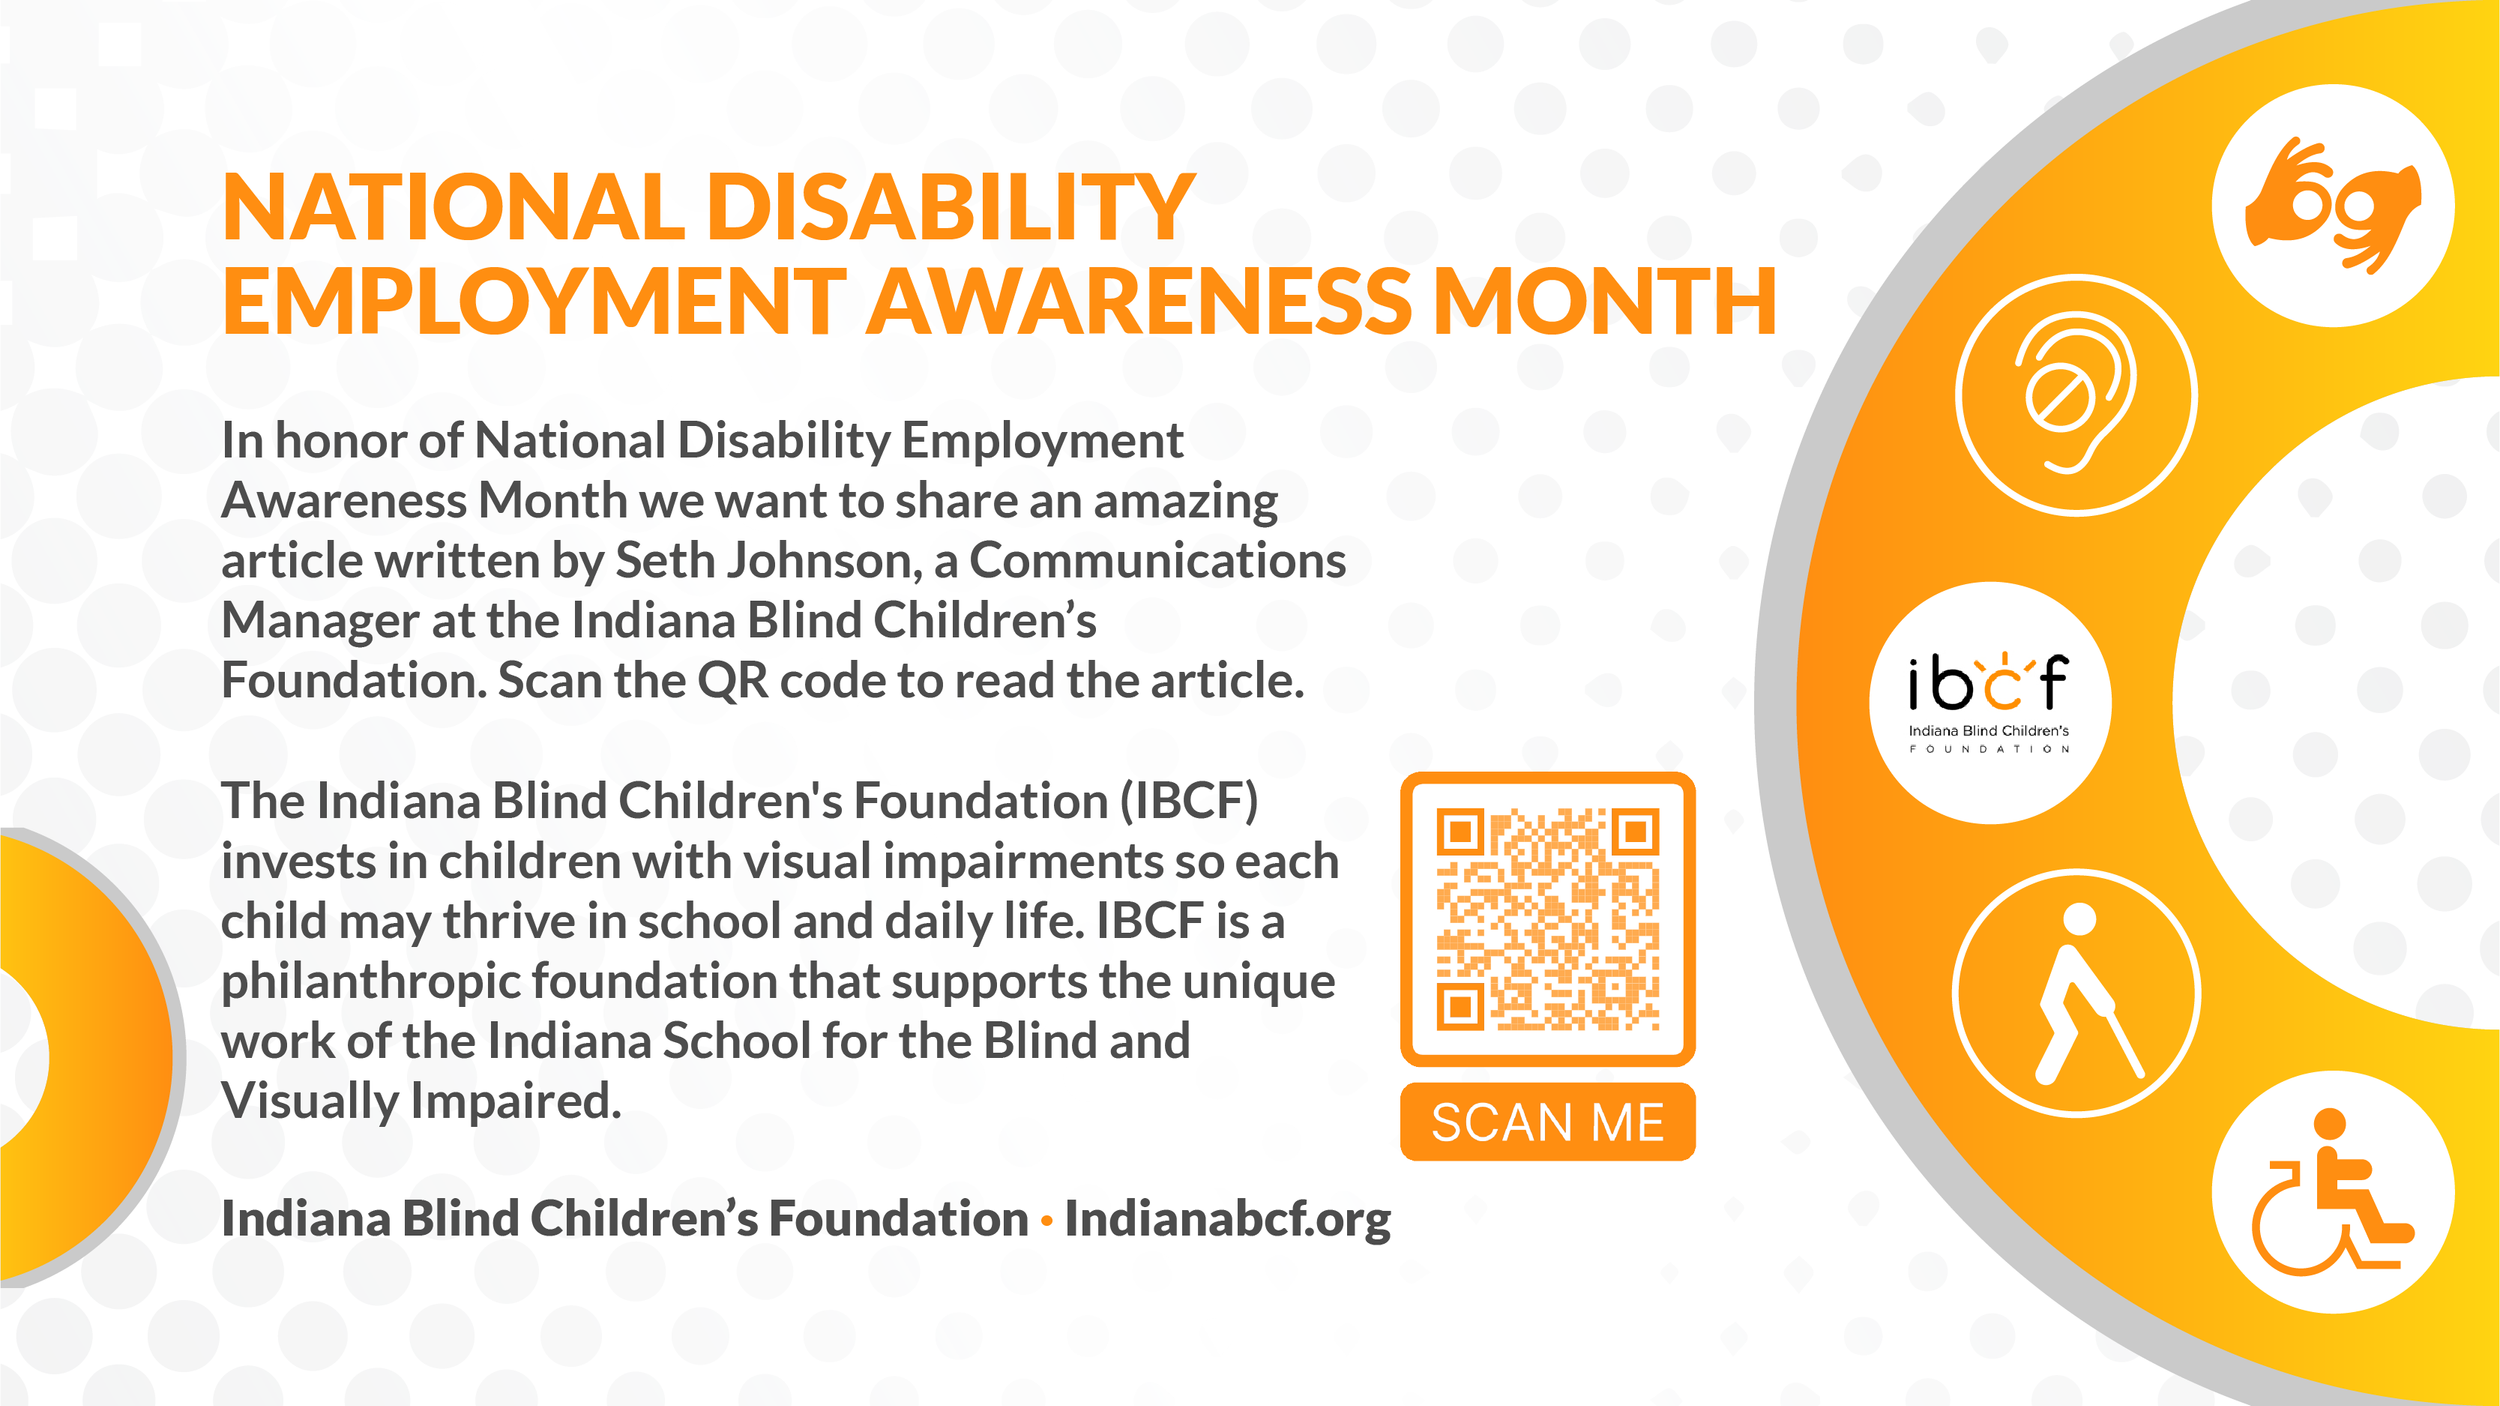 Natioanl Disability Employment Awareness Month